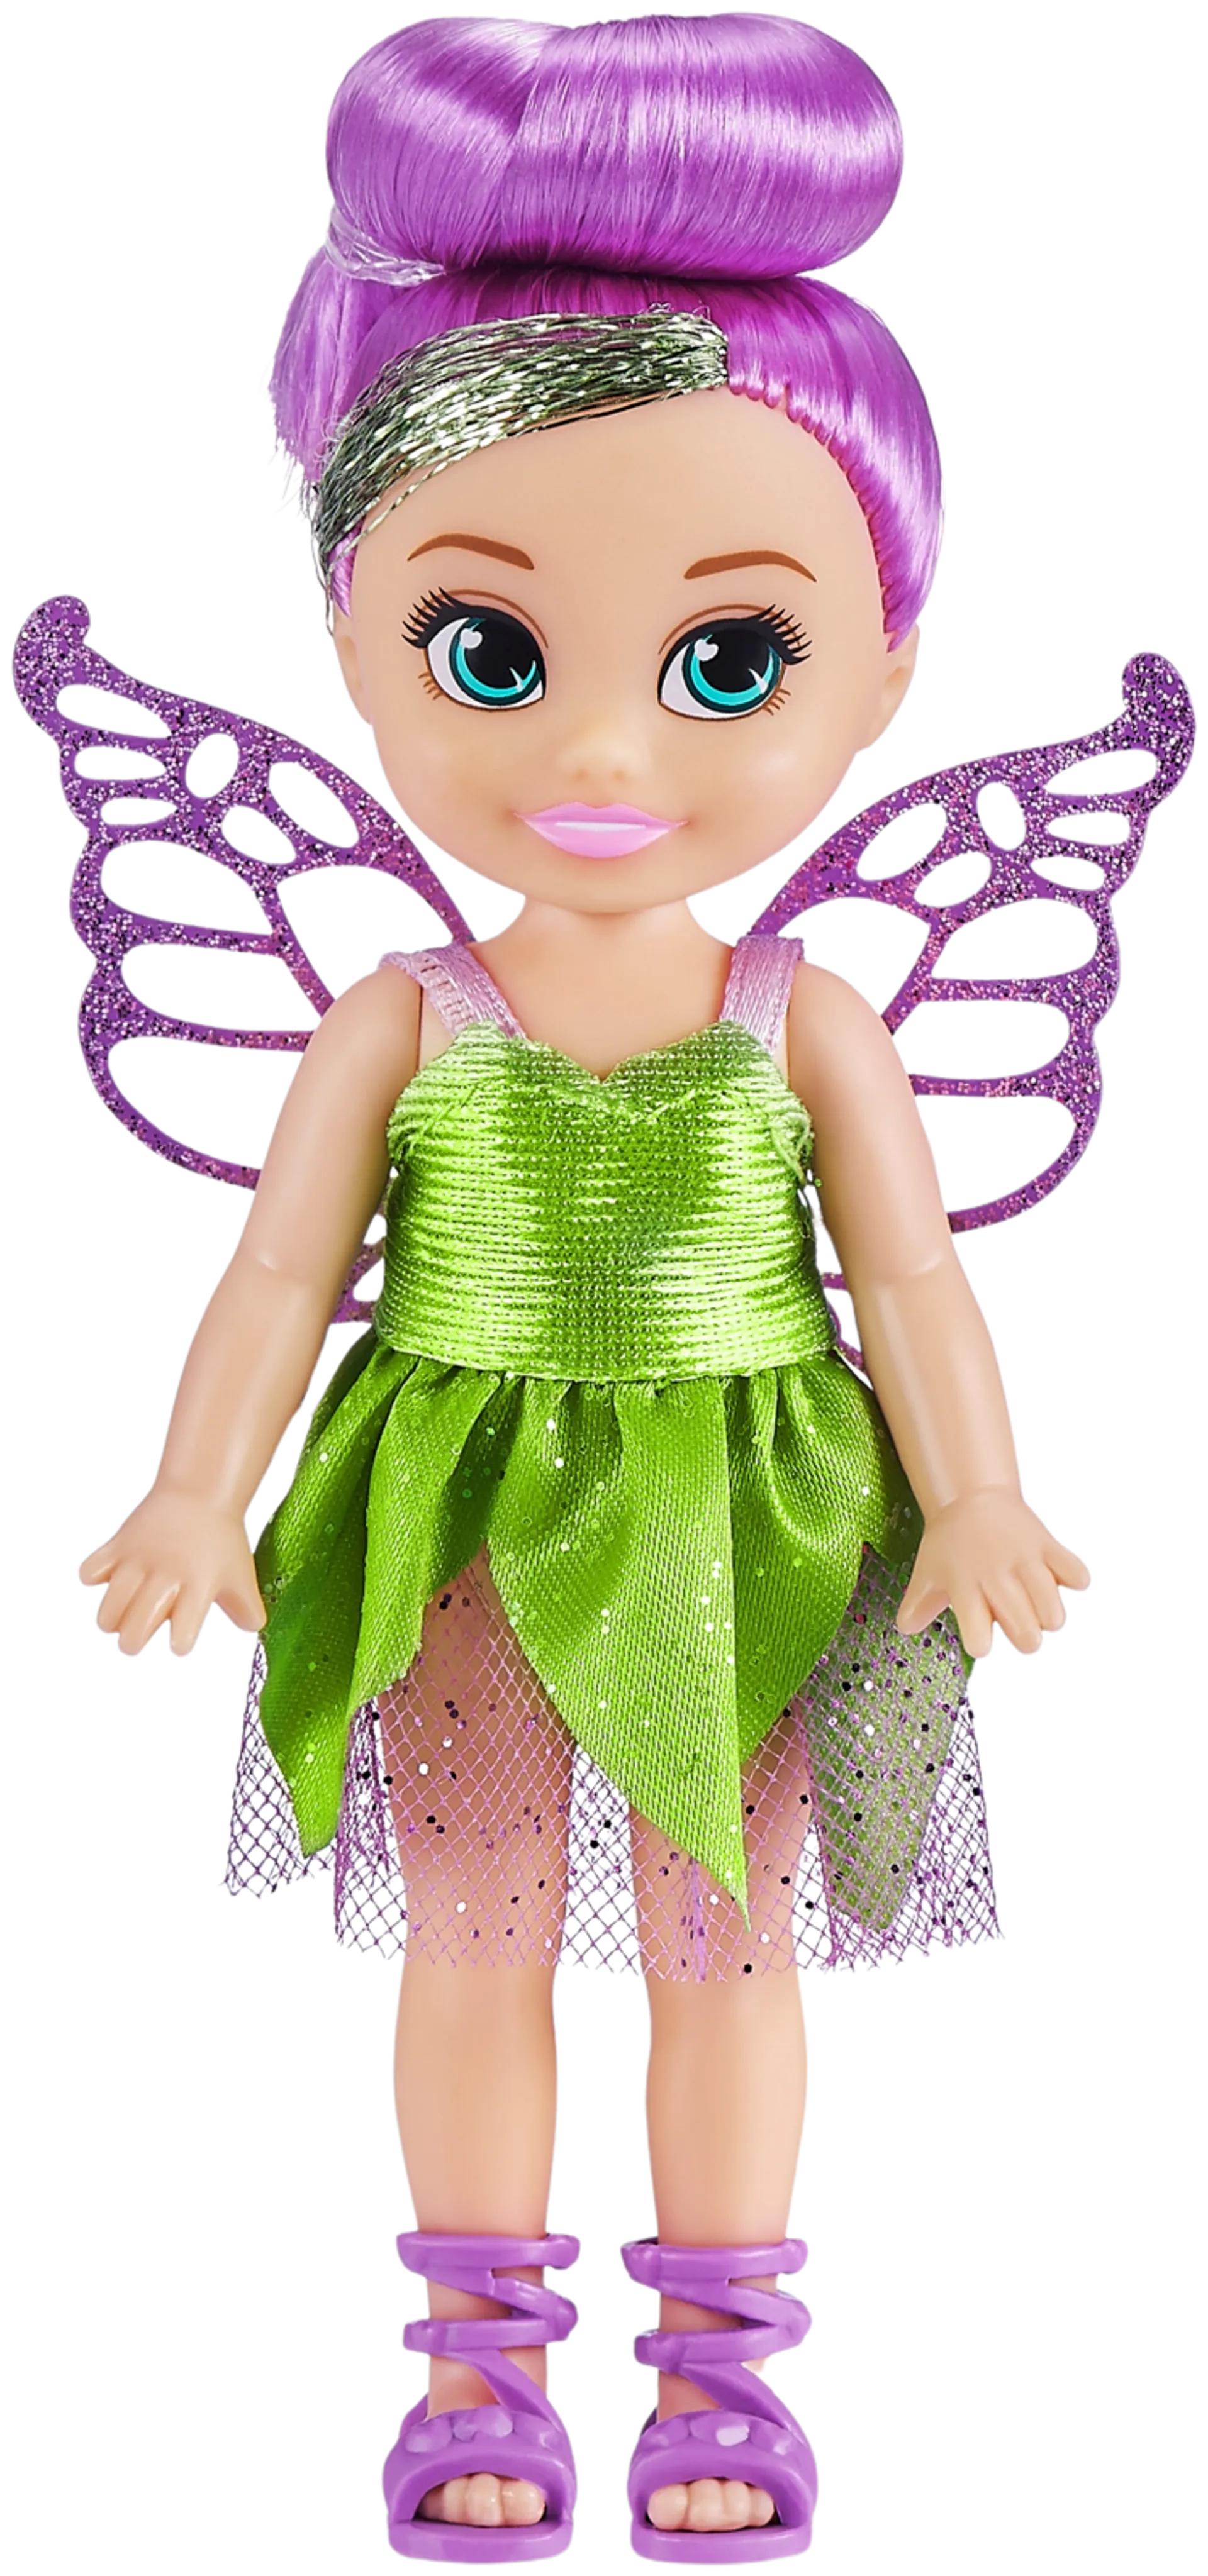 Fairy princess cupcake doll - 3